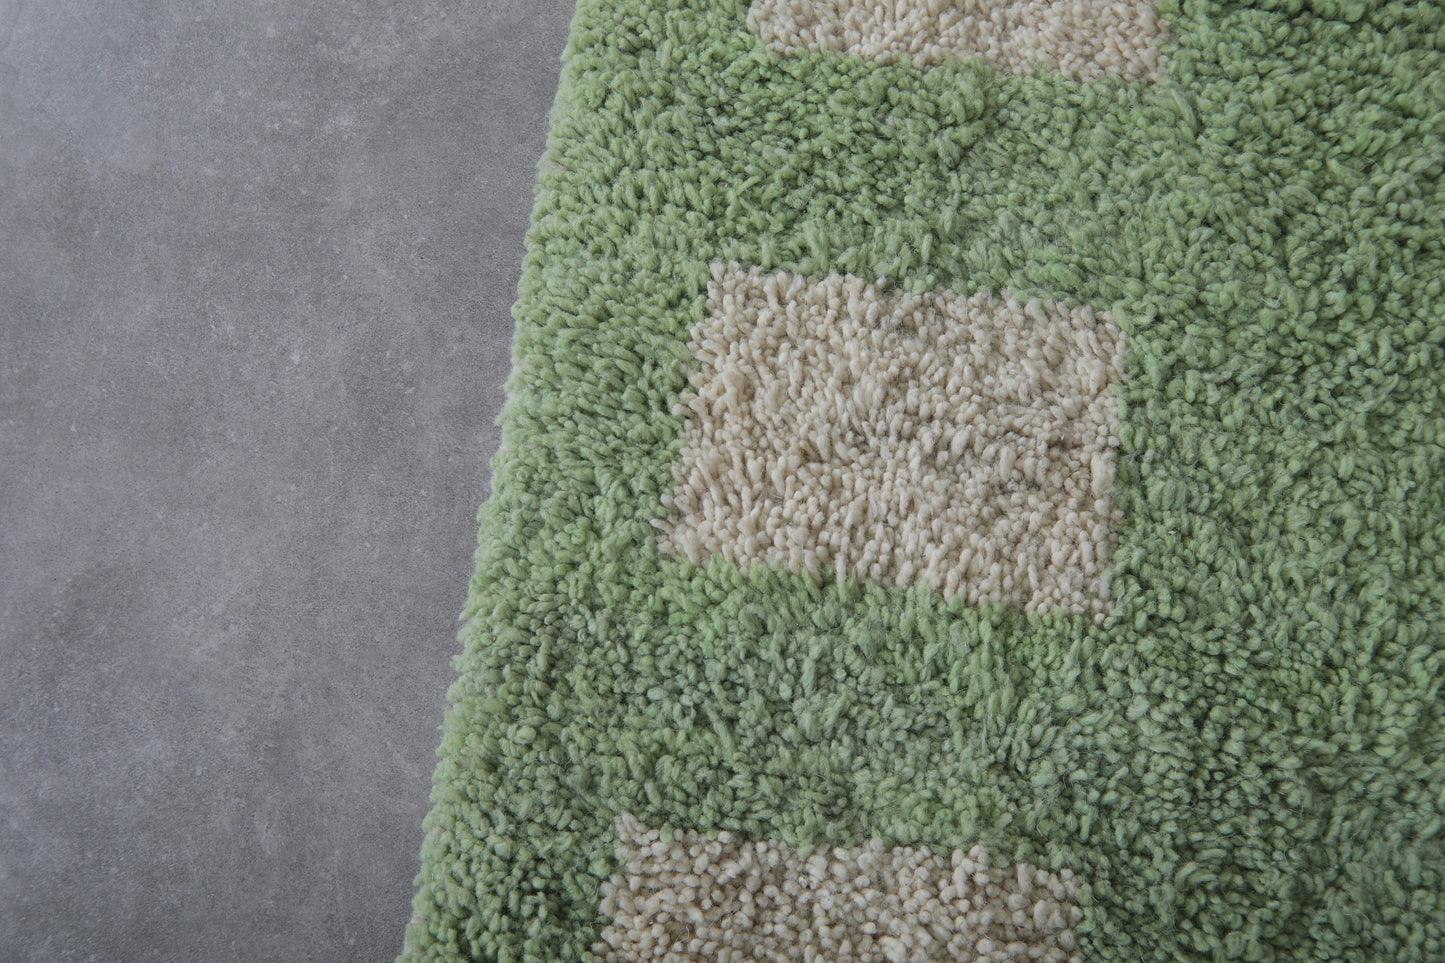 Custom Moroccan rug Green and Beige - Beni ourain handmade rug